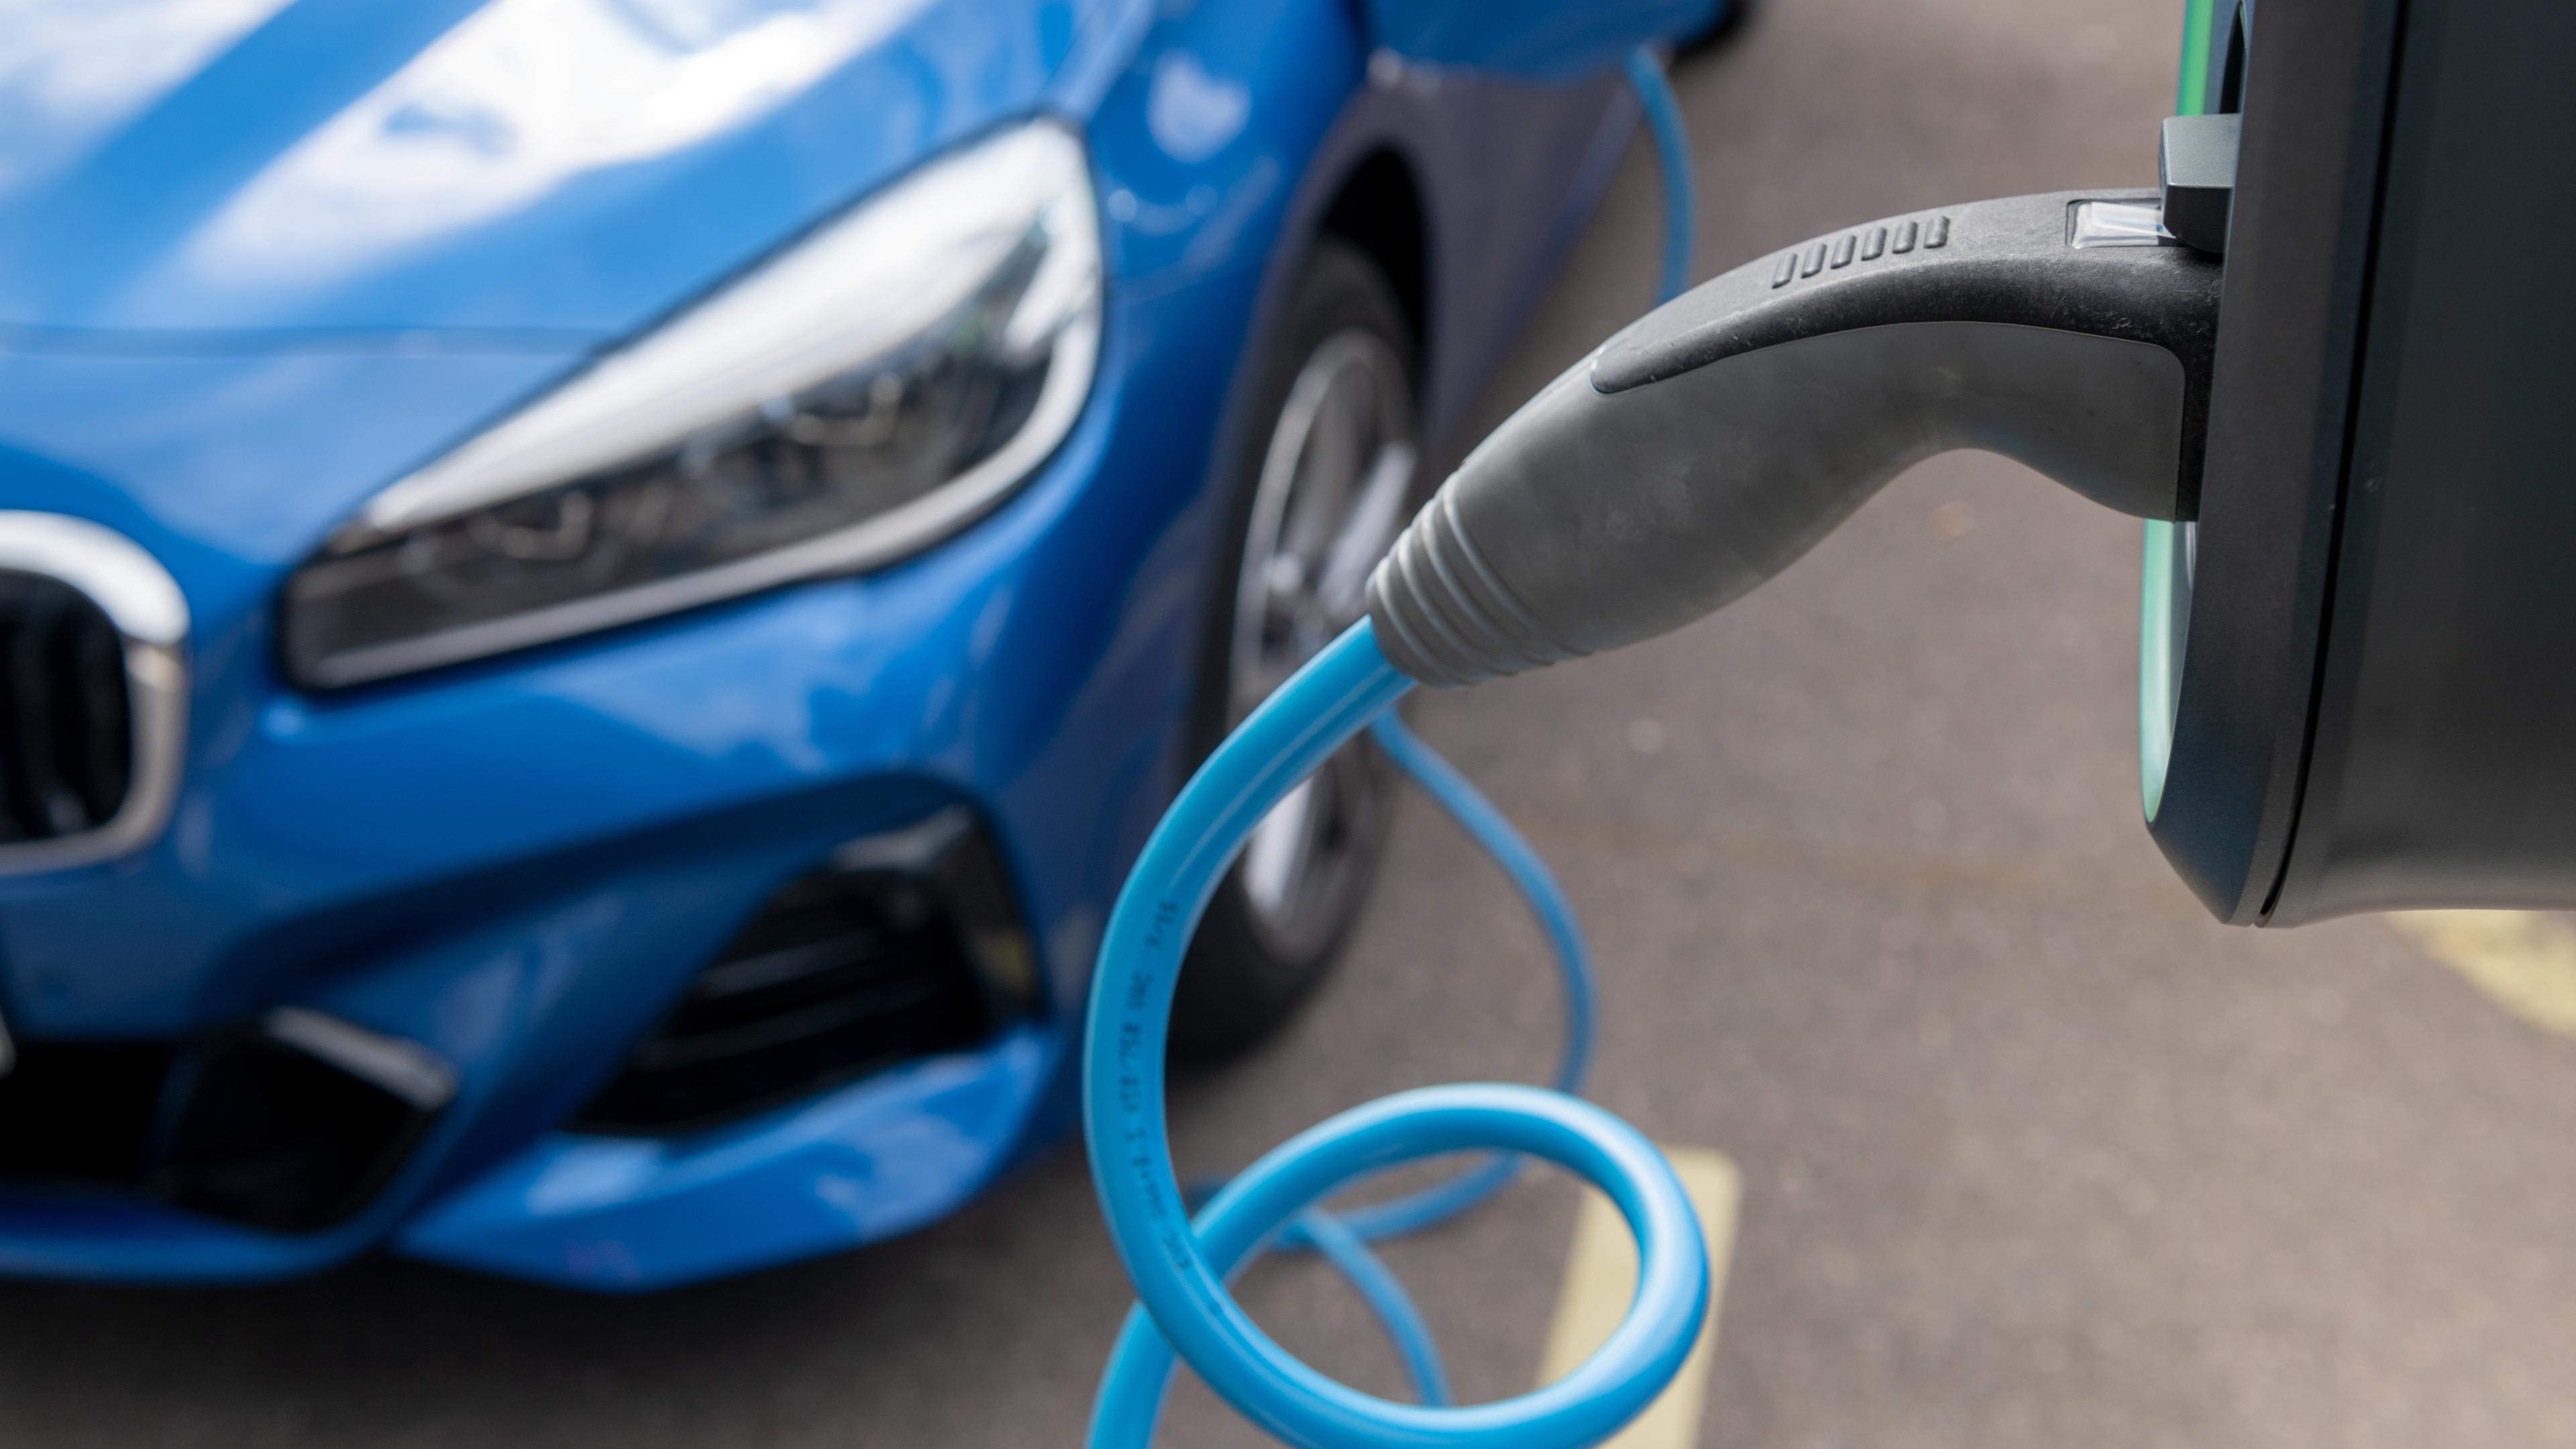 Archiv: Blauer BMW tankt an elektrischen Ladesäule